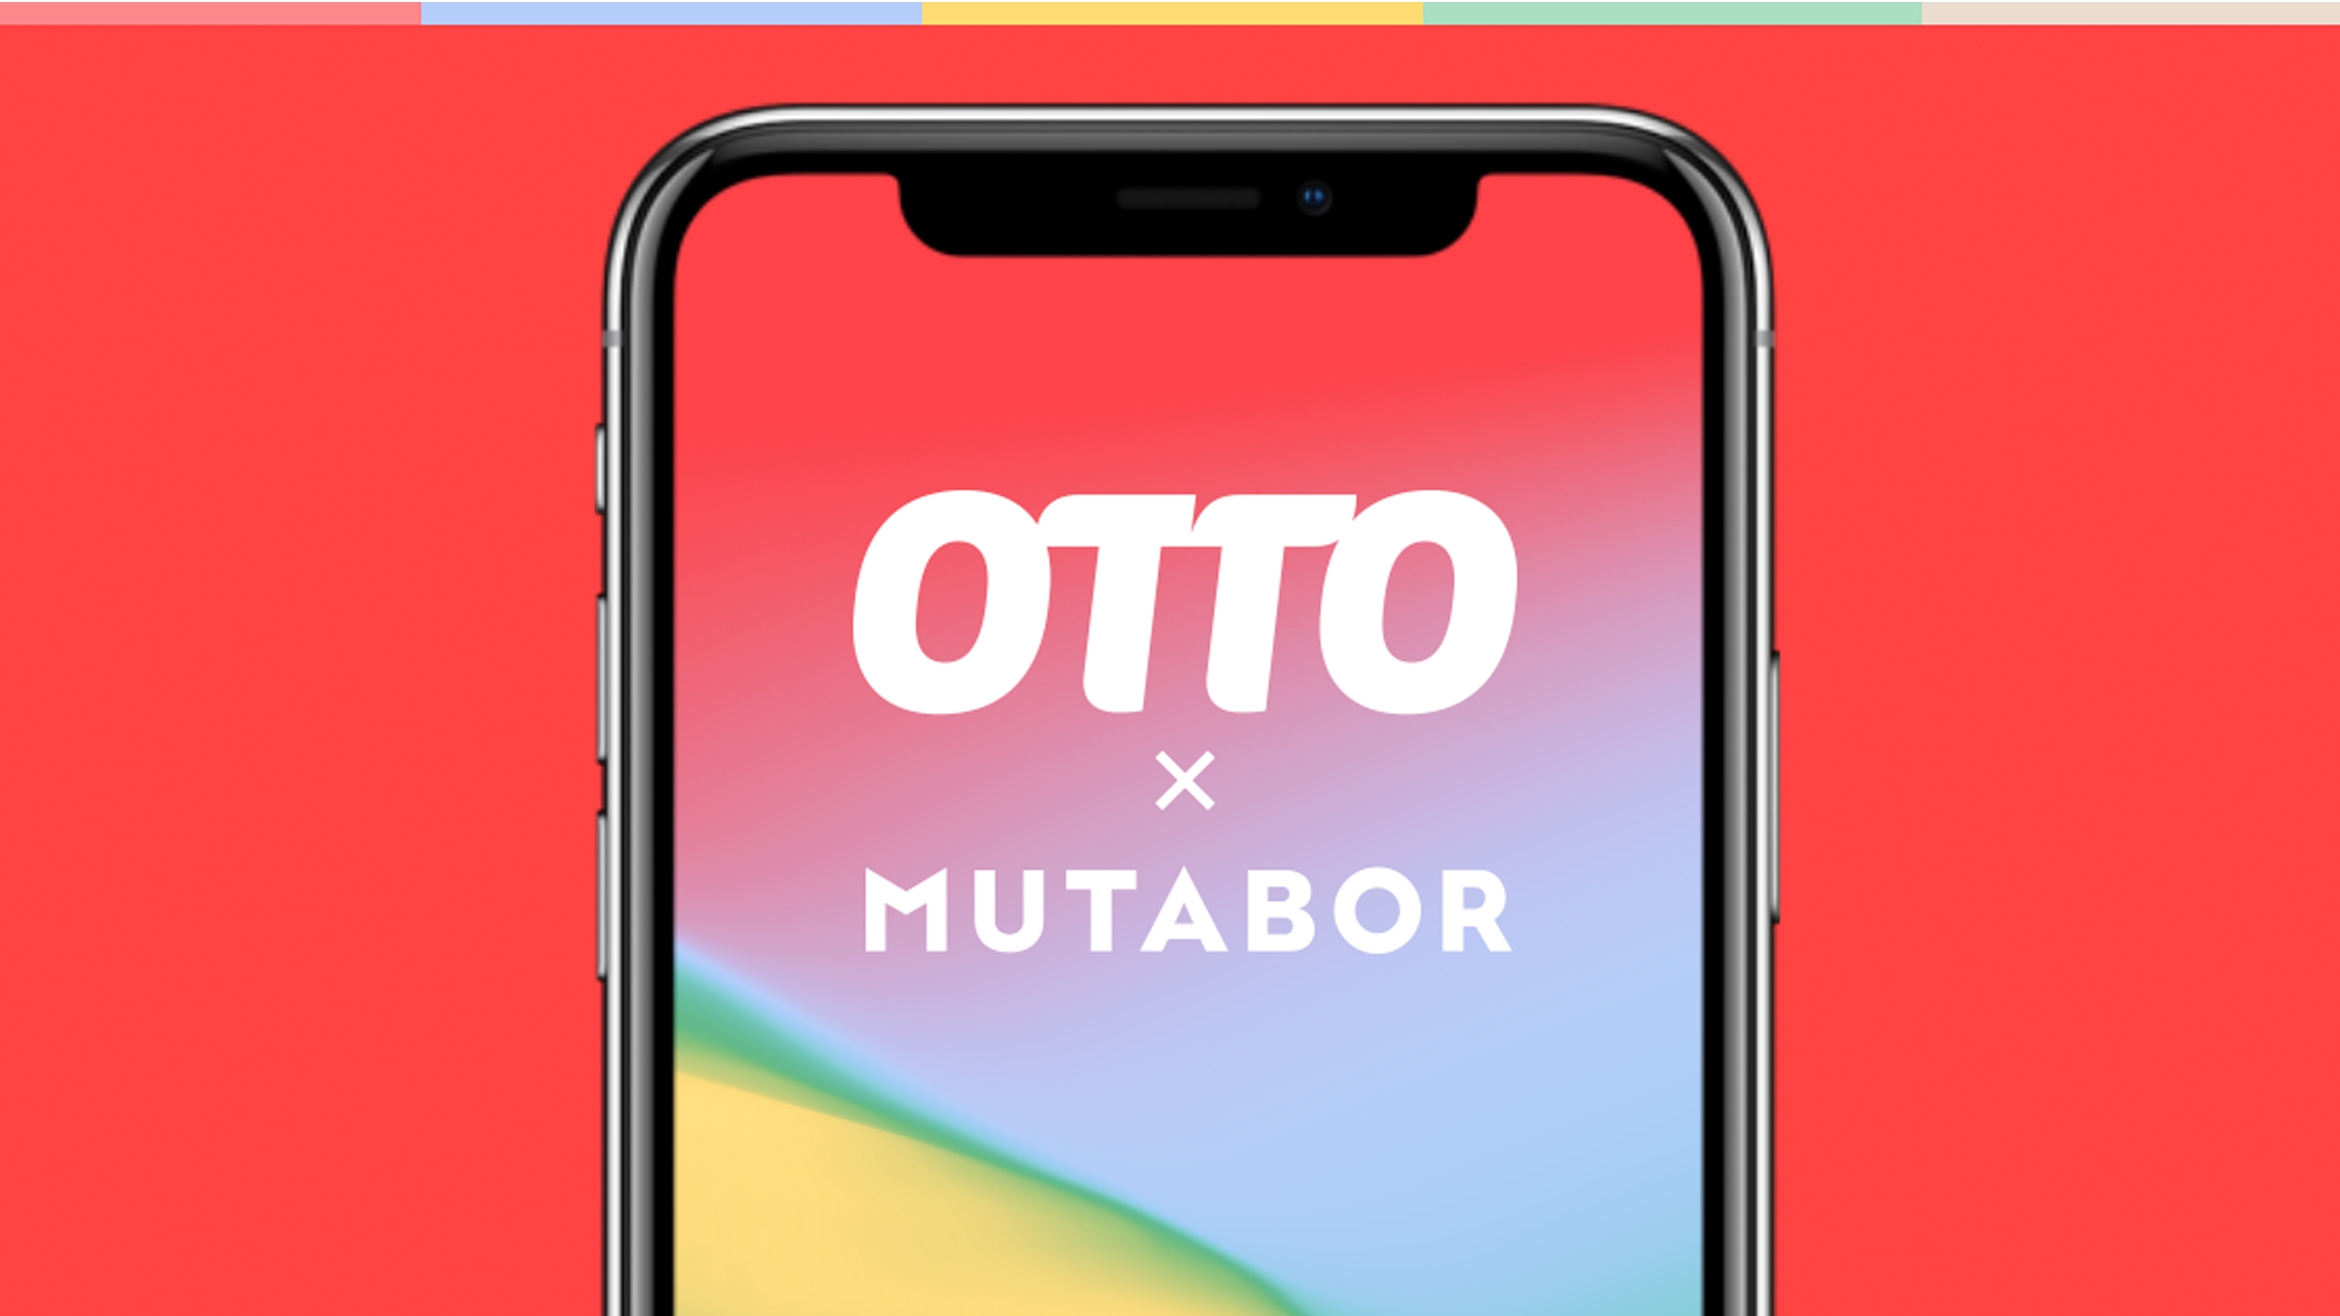 Mutabor überzeugte vor allem mit einer stark digital ausgerichteten Mobile-First-Strategie, die den Nutzer in den
Mittelpunkt aller Touchpoints und Maßnahmen stellt –